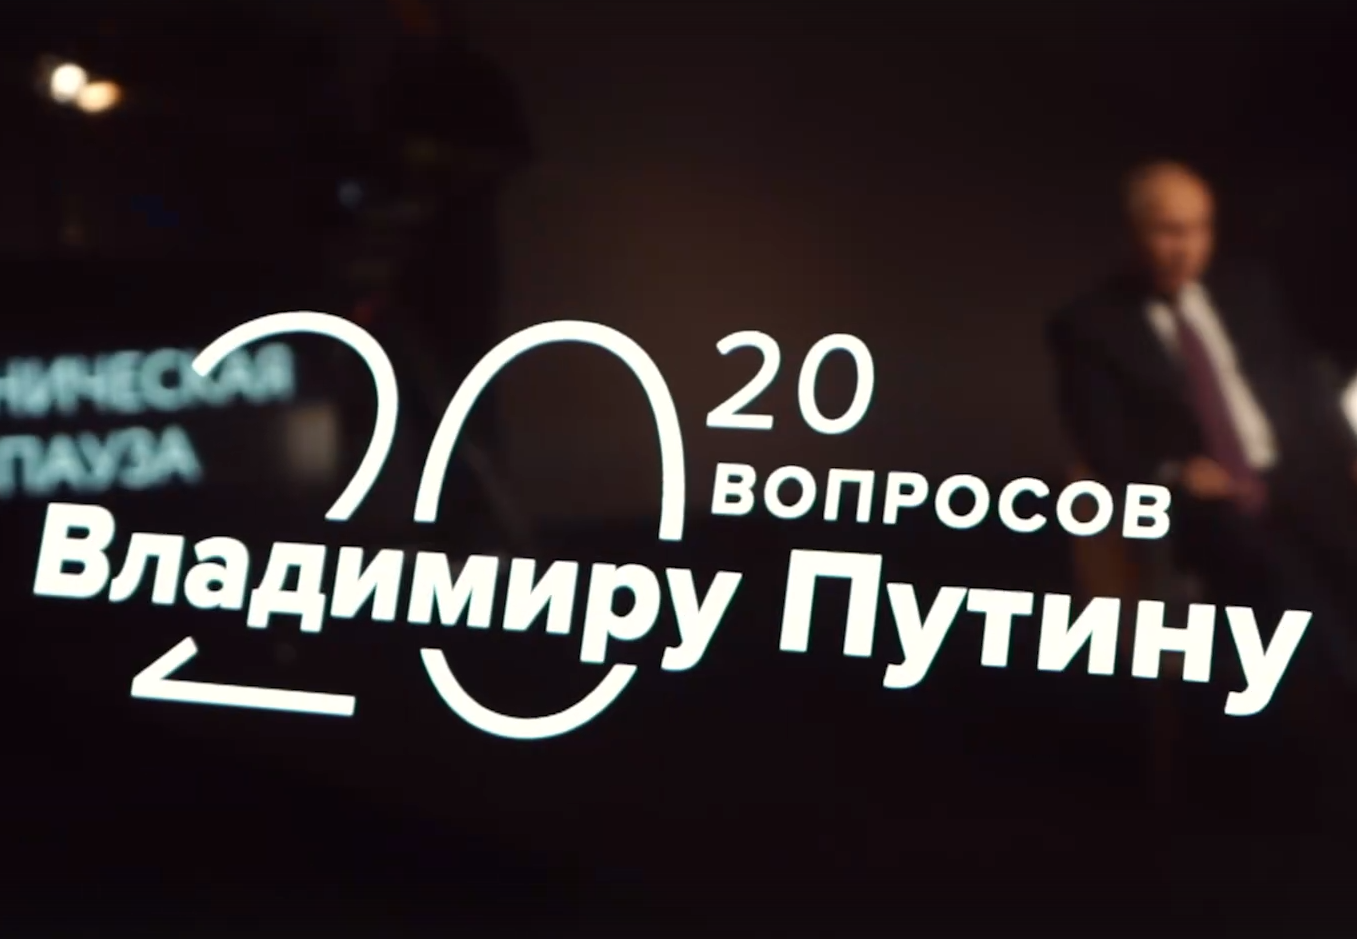 «20 вопросов Путину» - новый спецпроект ТАСС